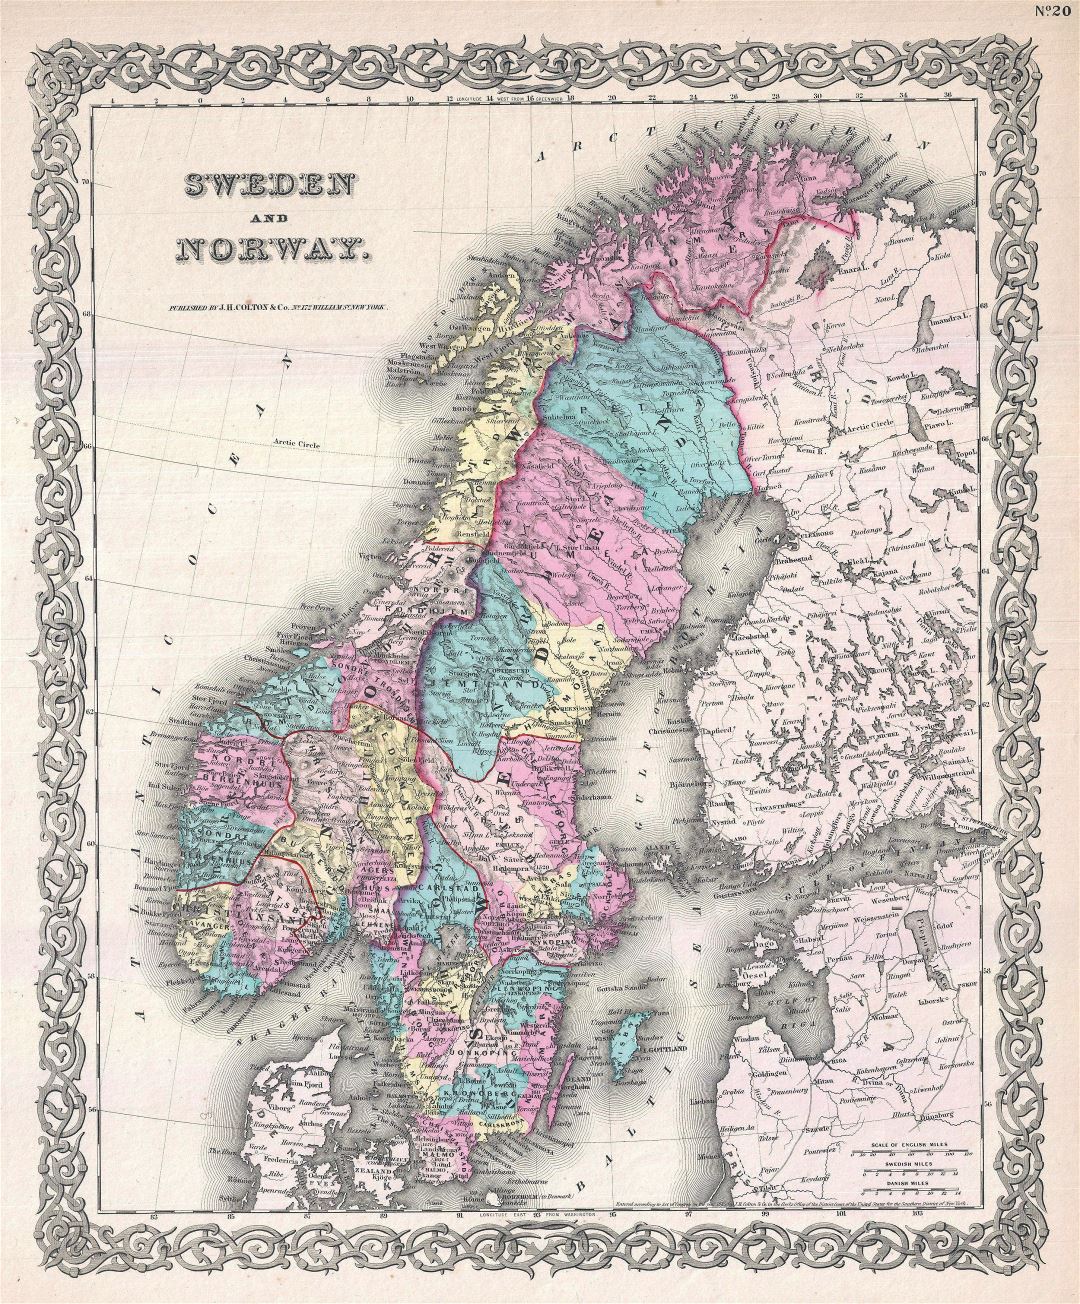 Grande detallado mapa vieja política y administrativa de Suecia y Noruega con alivio - 1855